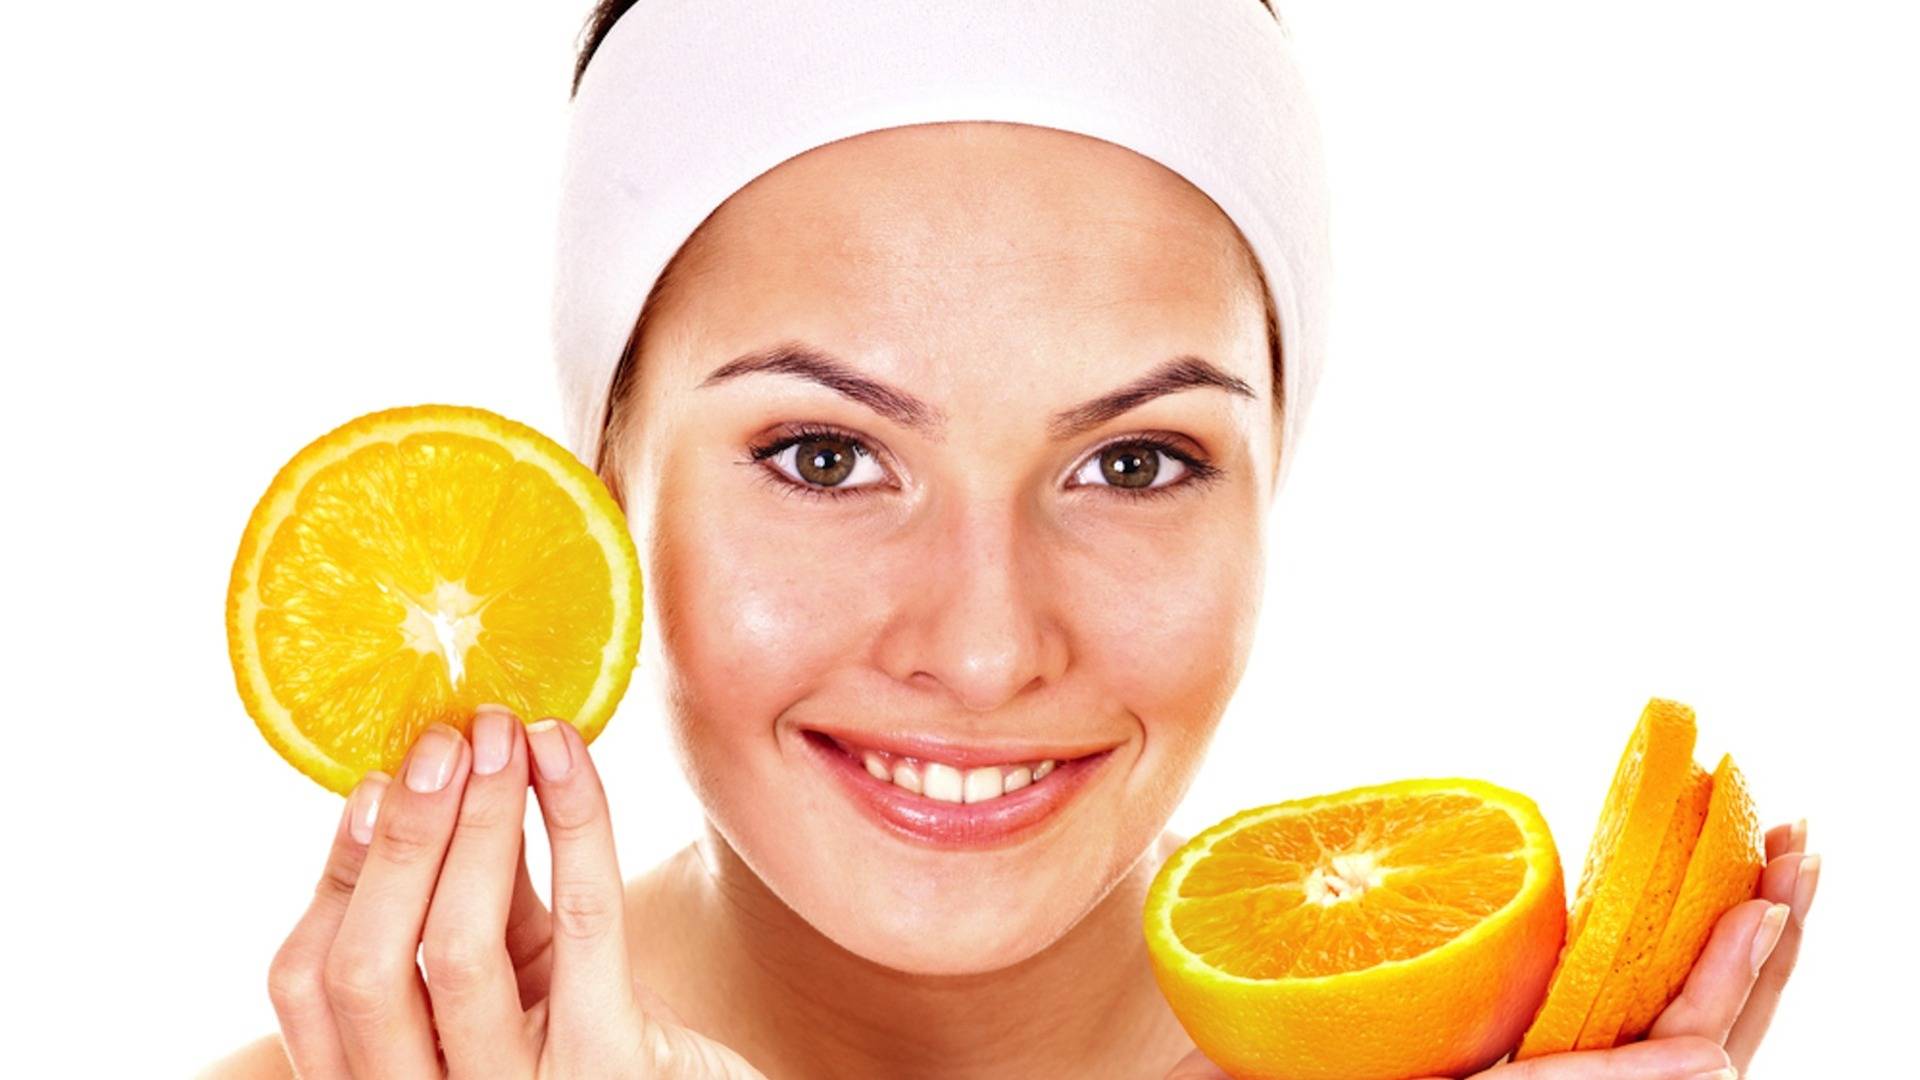 Апельсиновая маска для лица: польза, рекомендации по приготовлению